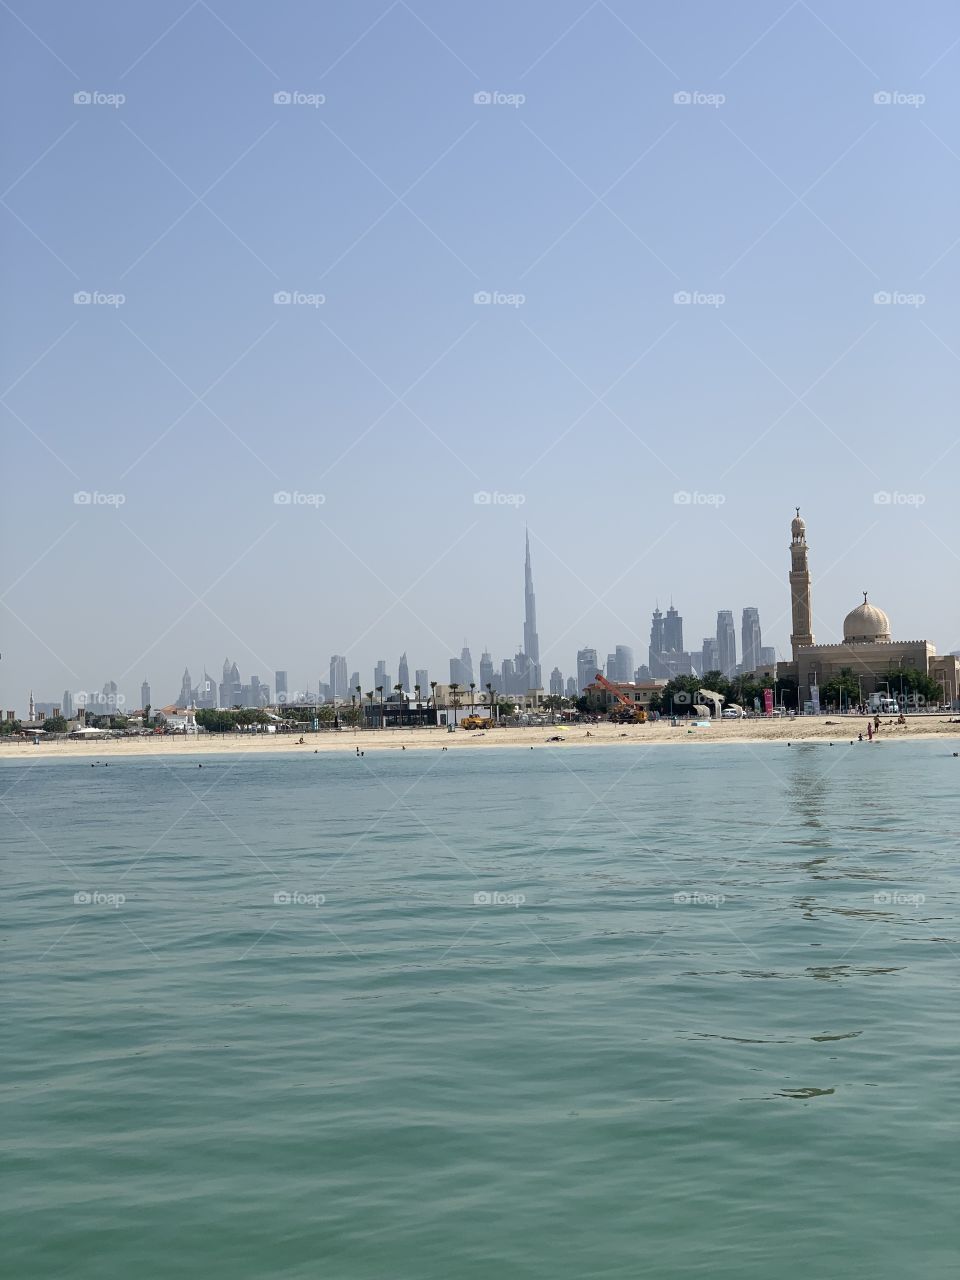 Dubai kite beach 